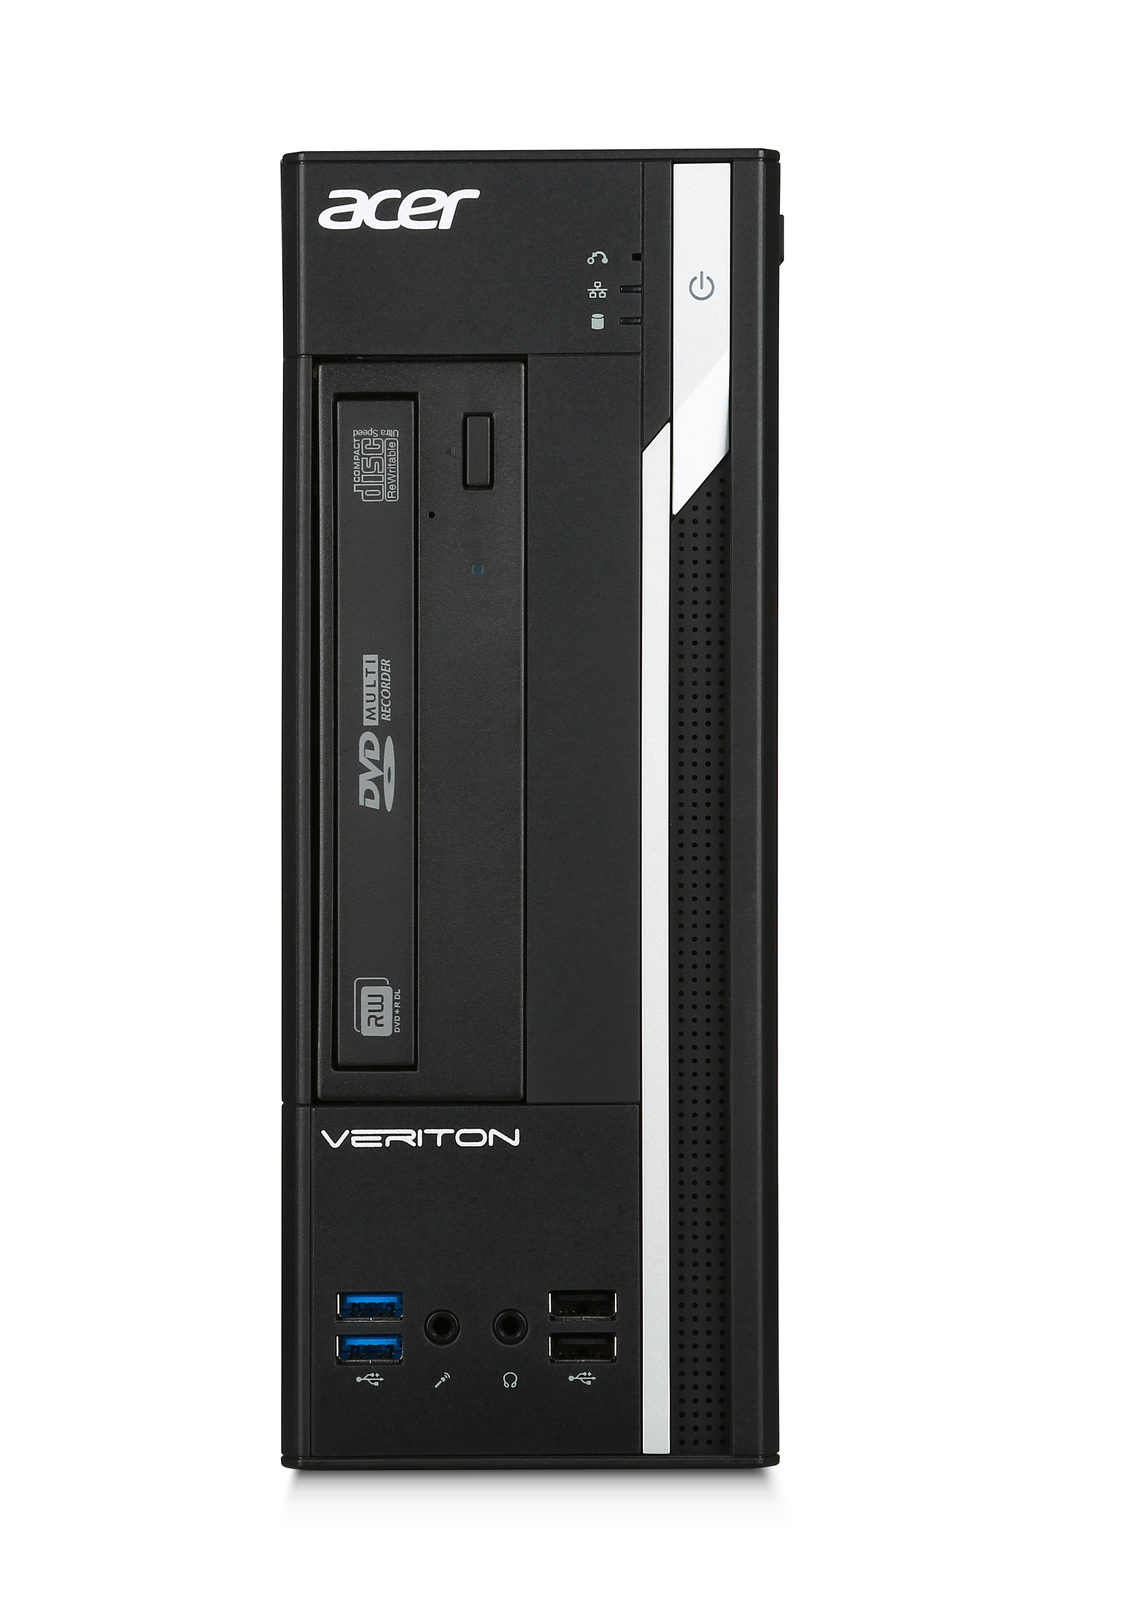 Acer Veriton X2640G SFF Intel i5 7400 3.0GHz 8GB RAM 500GB HDD Win 10